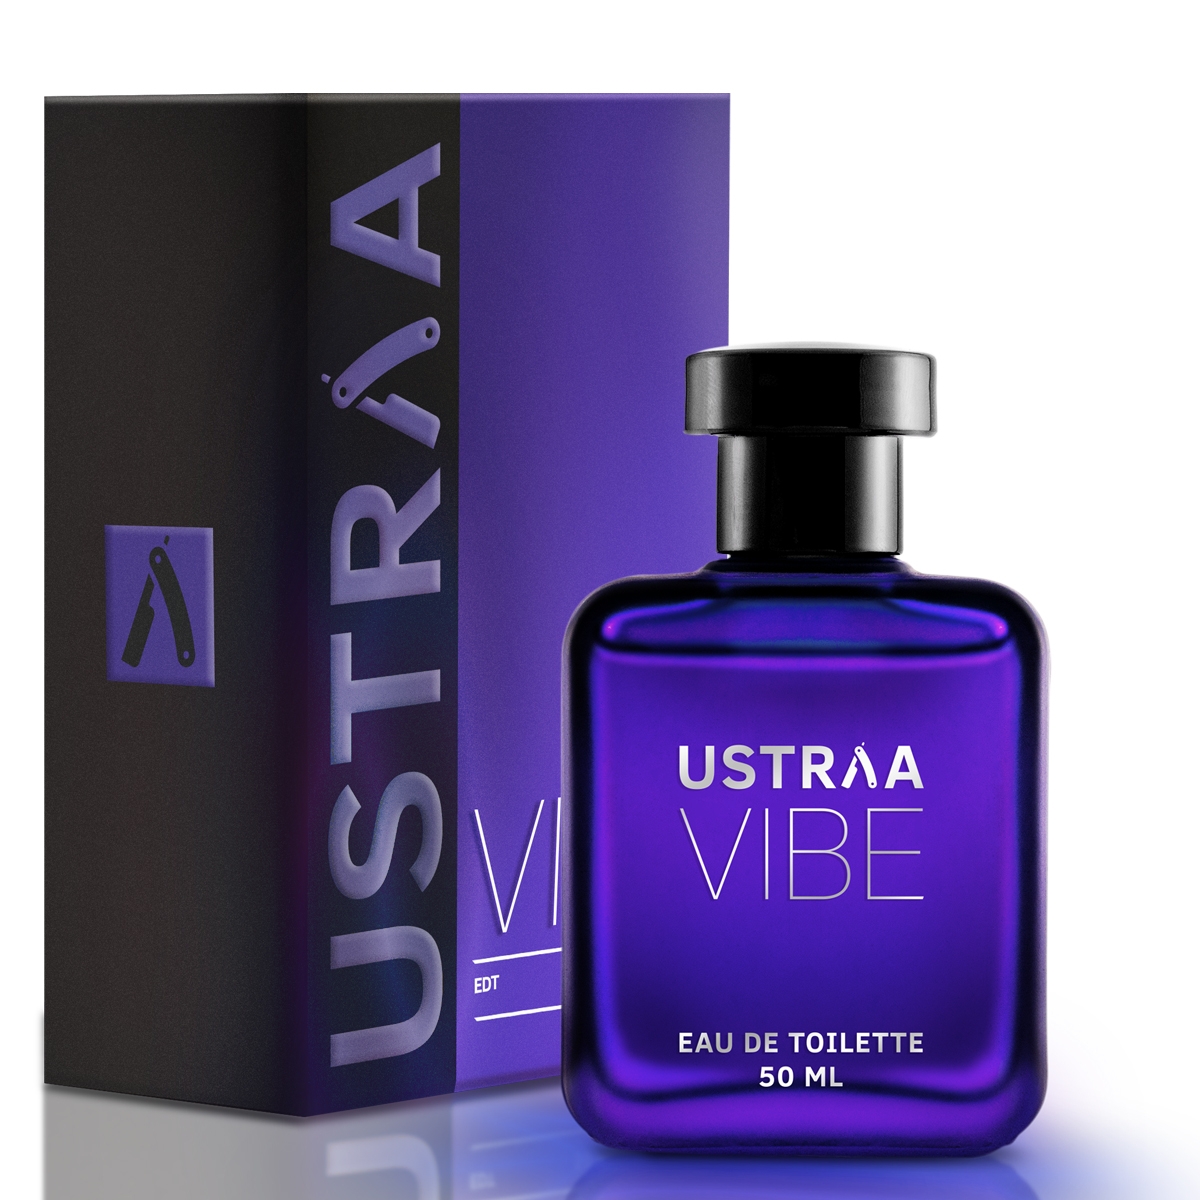 Ustraa | Ustraa Vibe EDT 50ml - Perfume for Men 4